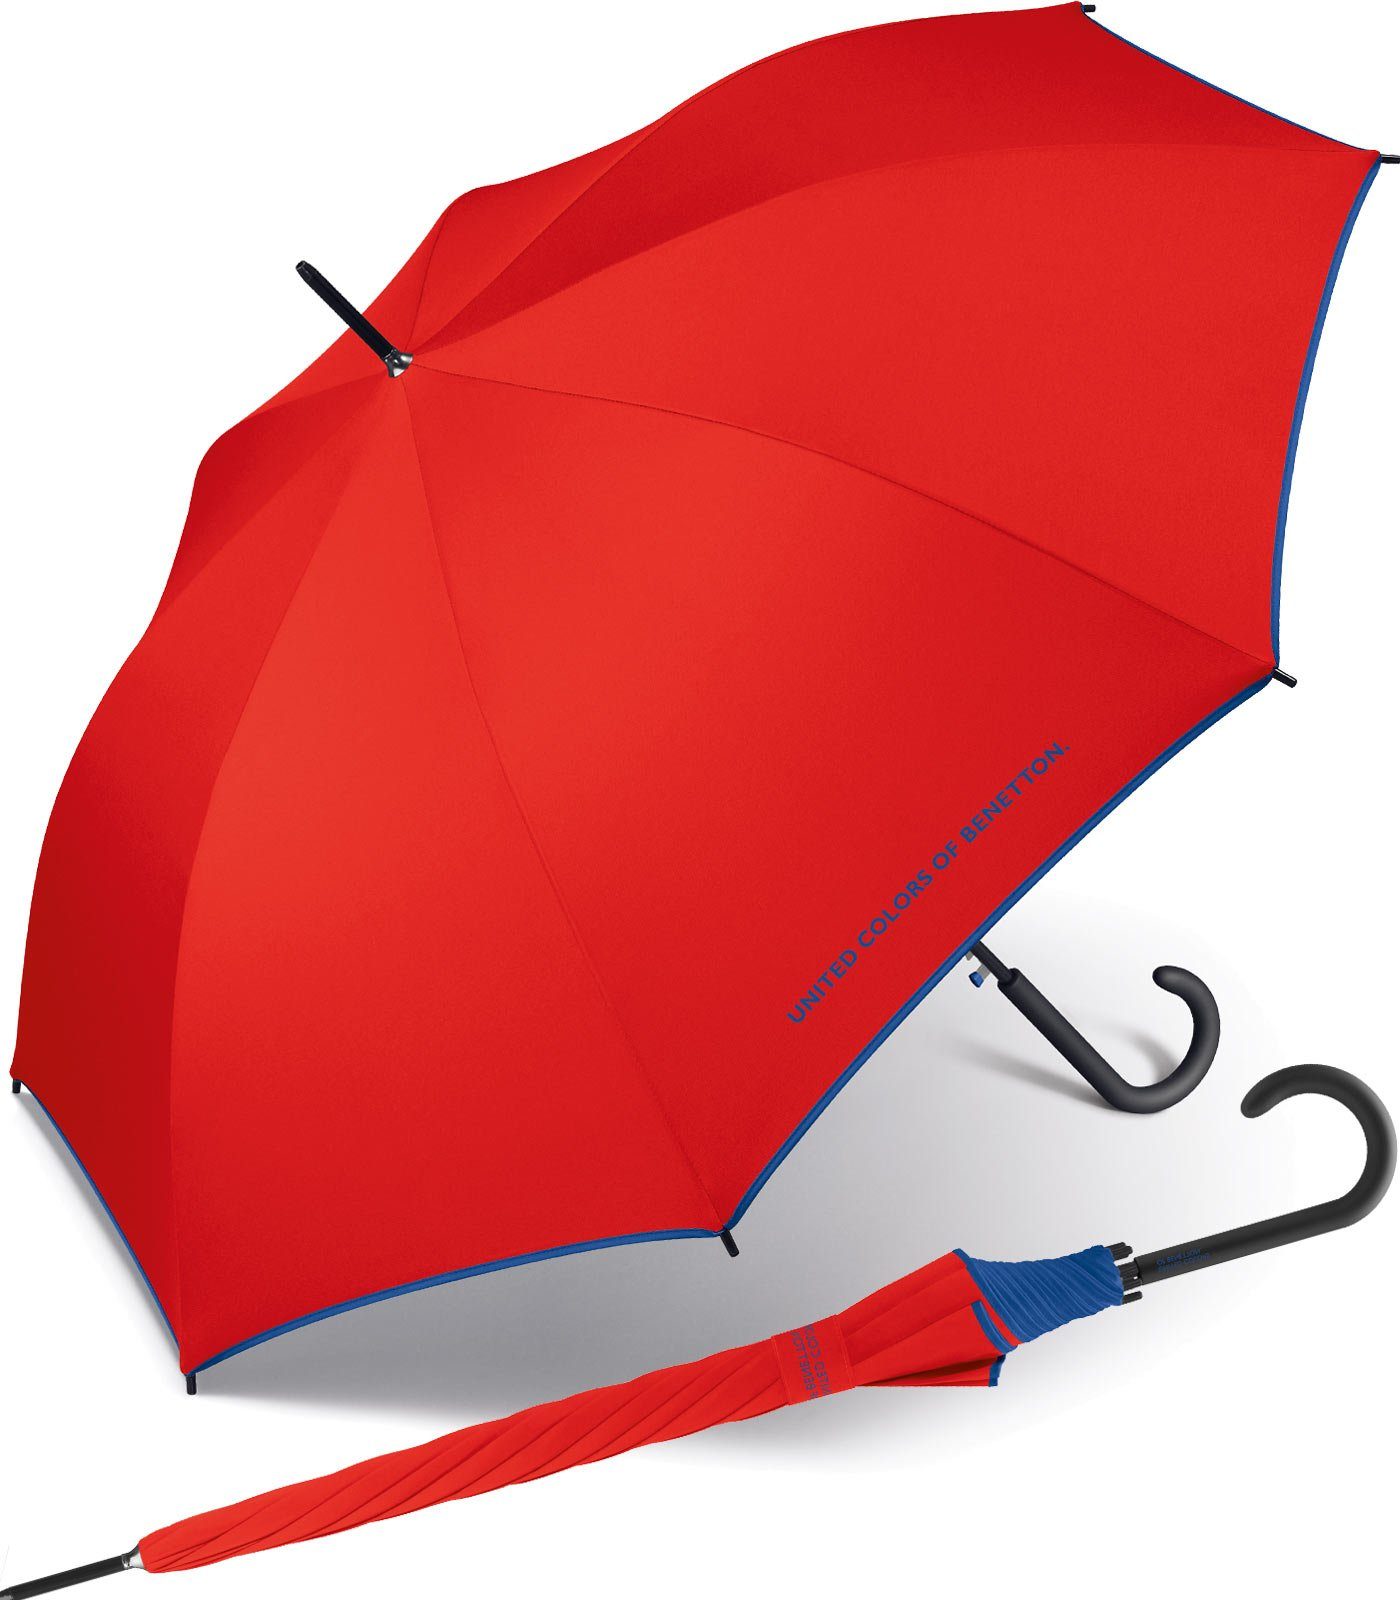 United Colors of Benetton Langregenschirm großer Regenschirm mit Auf-Automatik und Logo, einfarbig mit Kontrastfarben am Schirmrand rot